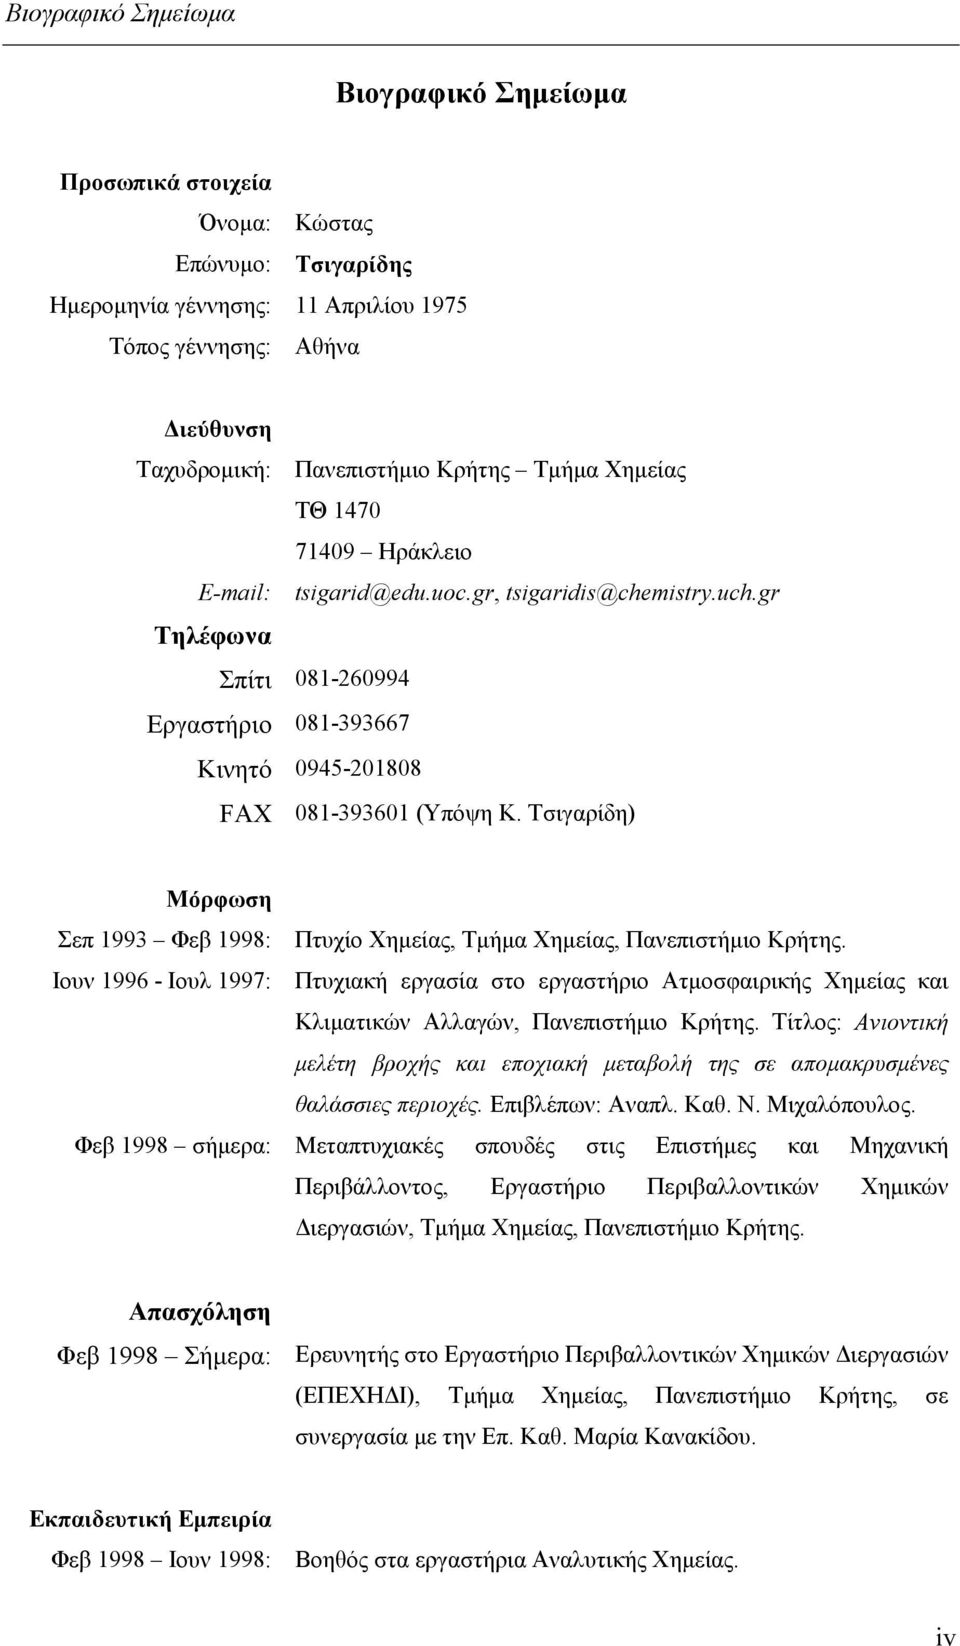 Τσιγαρίδη) Μόρφωση Σεπ 1993 Φεβ 1998: Πτυχίο Χημείας, Τμήμα Χημείας, Πανεπιστήμιο Κρήτης.